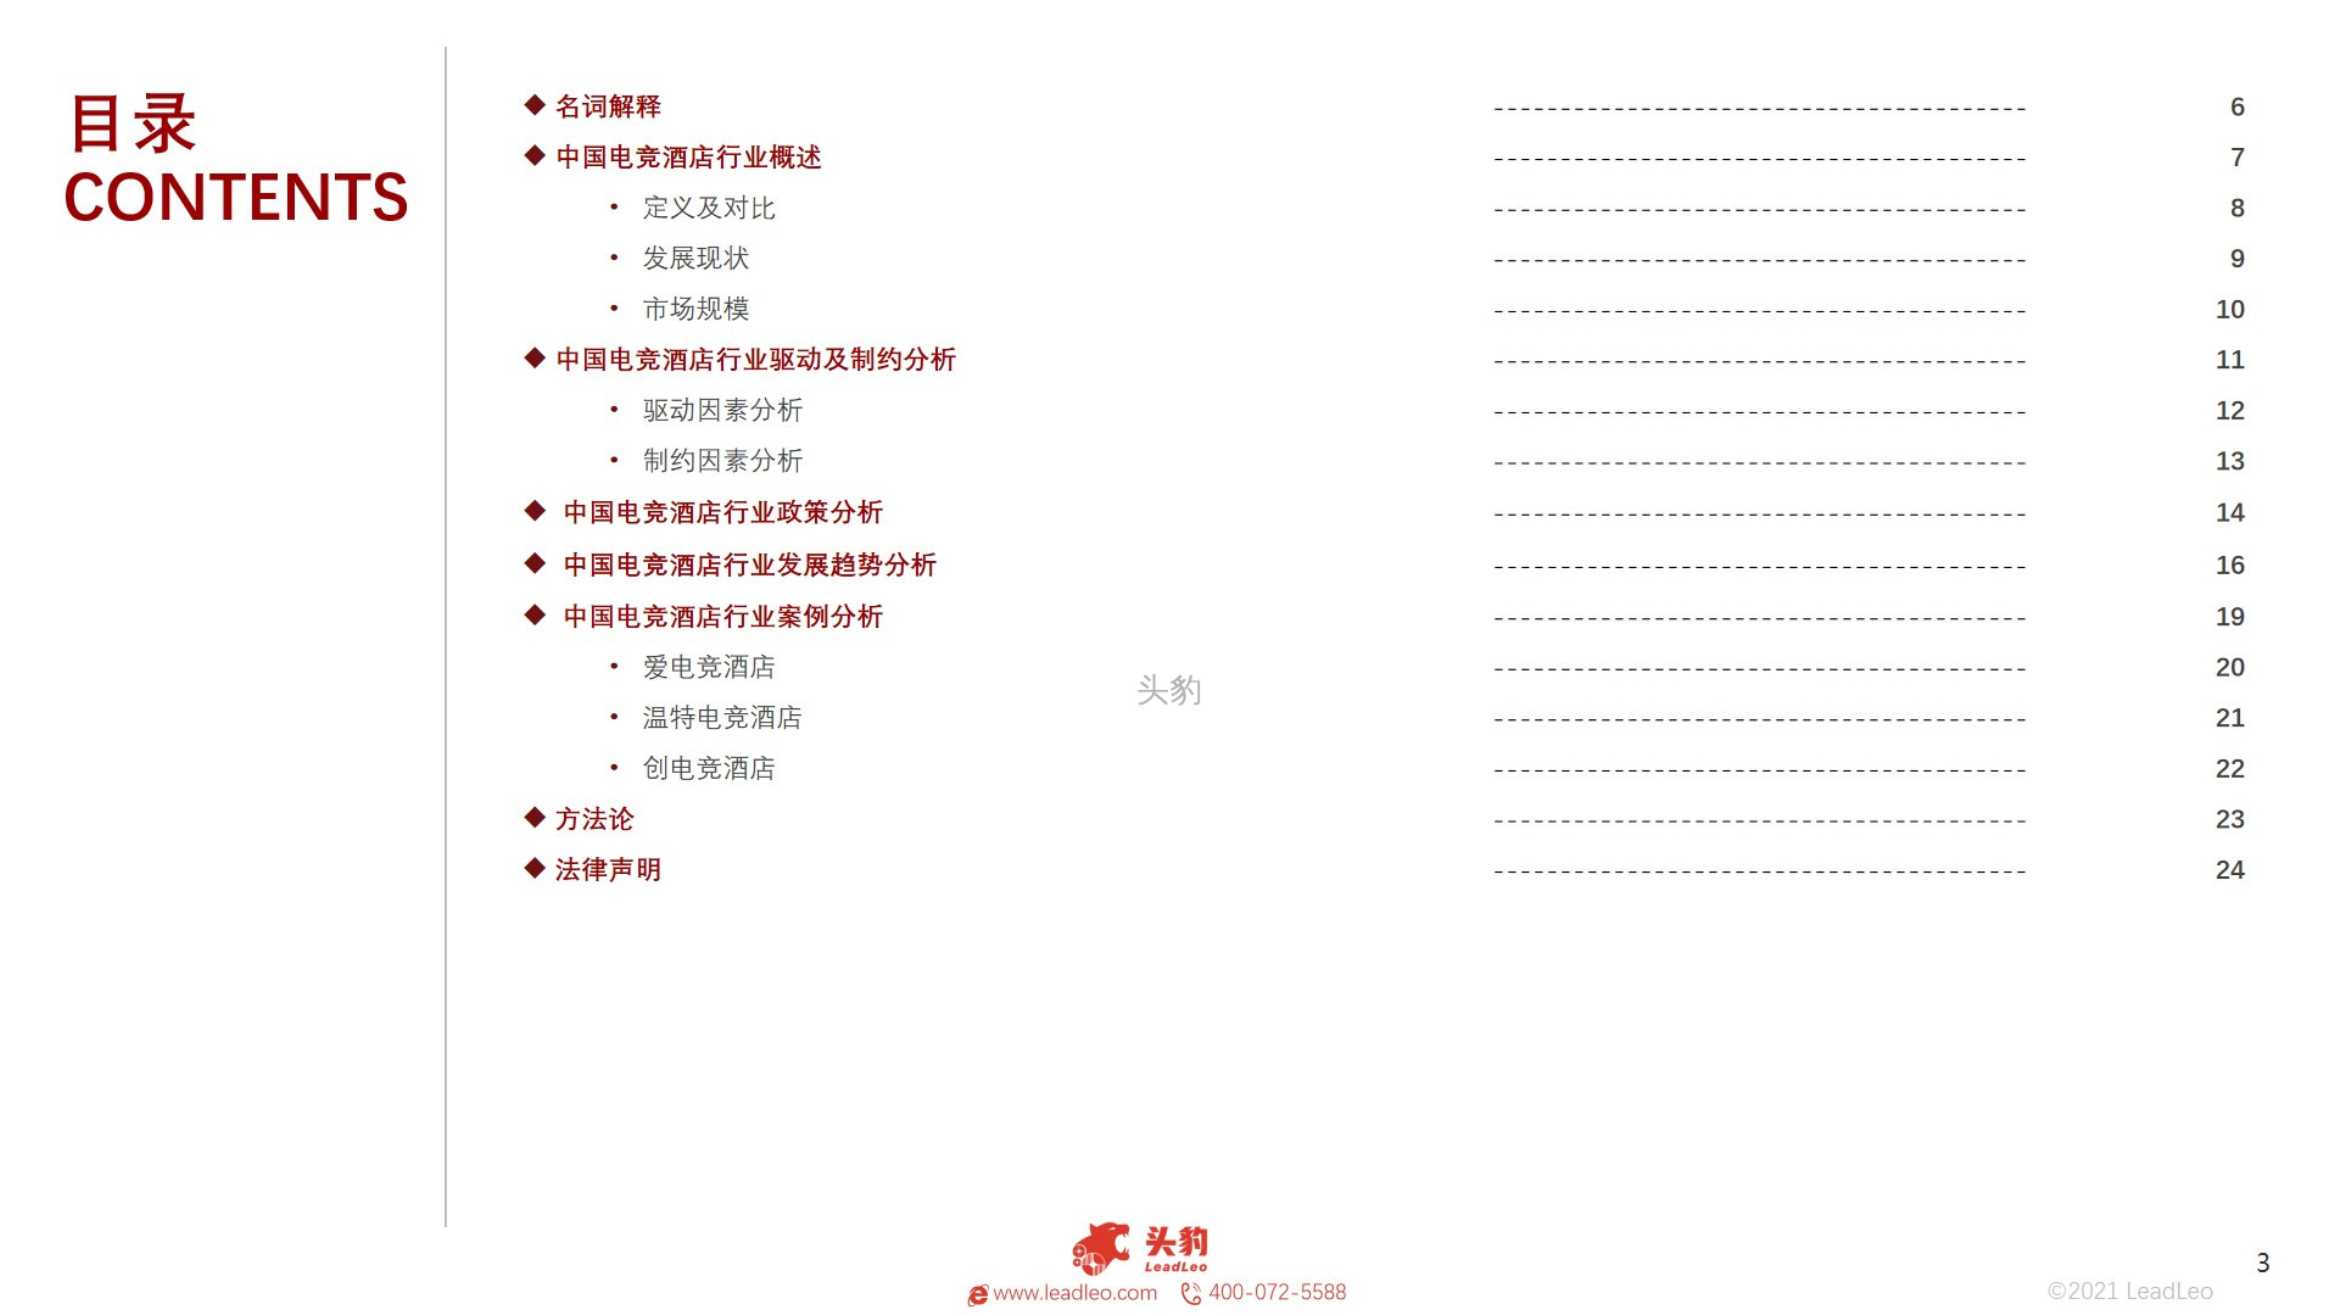 2022年中国电竞酒店行业短报告-2022.03-29页